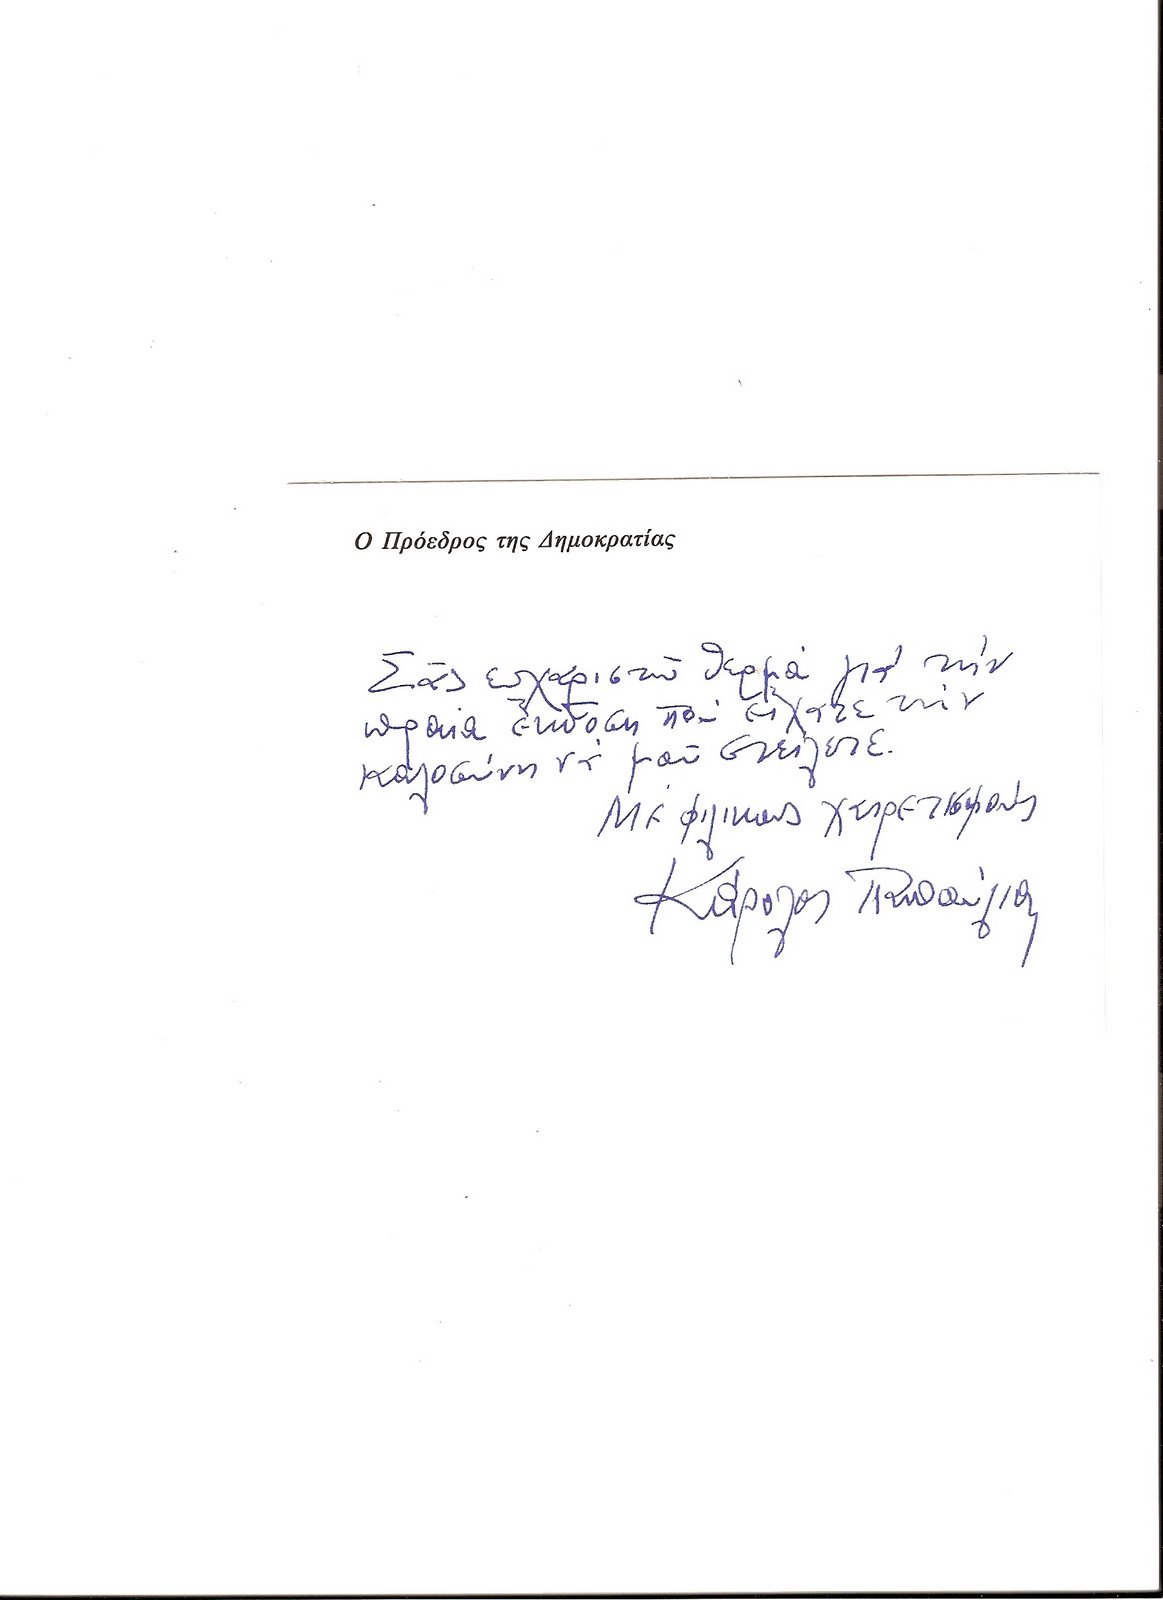 [Ευχαριστήρια+επιστολή+από+Πρόεδρο+της+Δημοκρατίας.jpg]